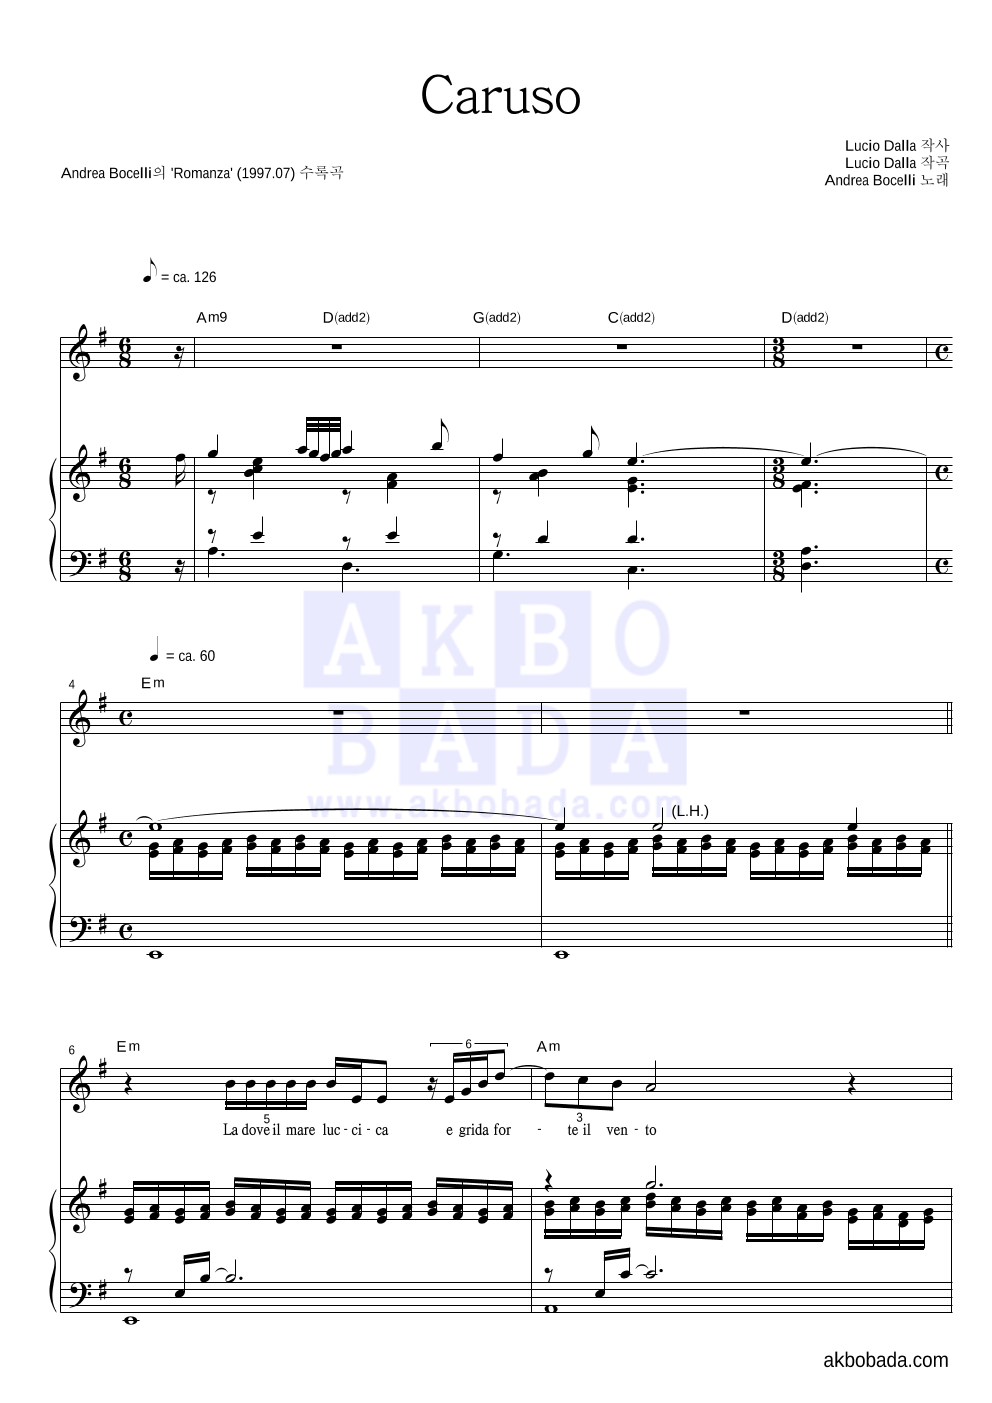 Andrea Bocelli - Caruso 피아노 3단 악보 